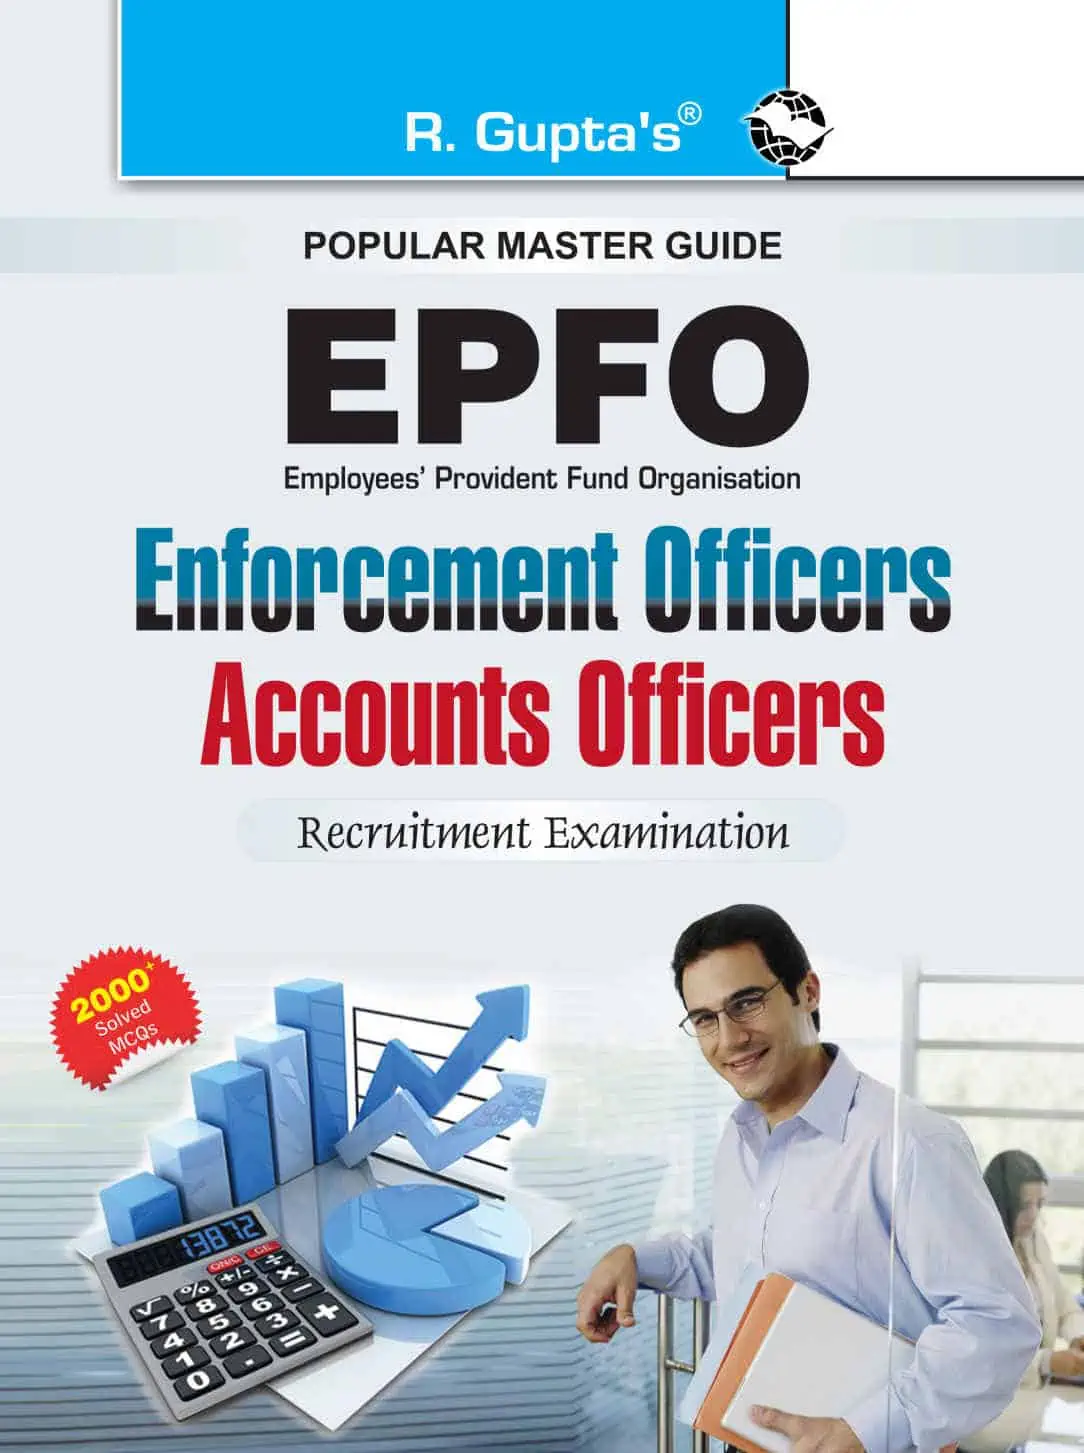 Arihant UPSC EPFO (Enforcement Officer) 2020 Edition